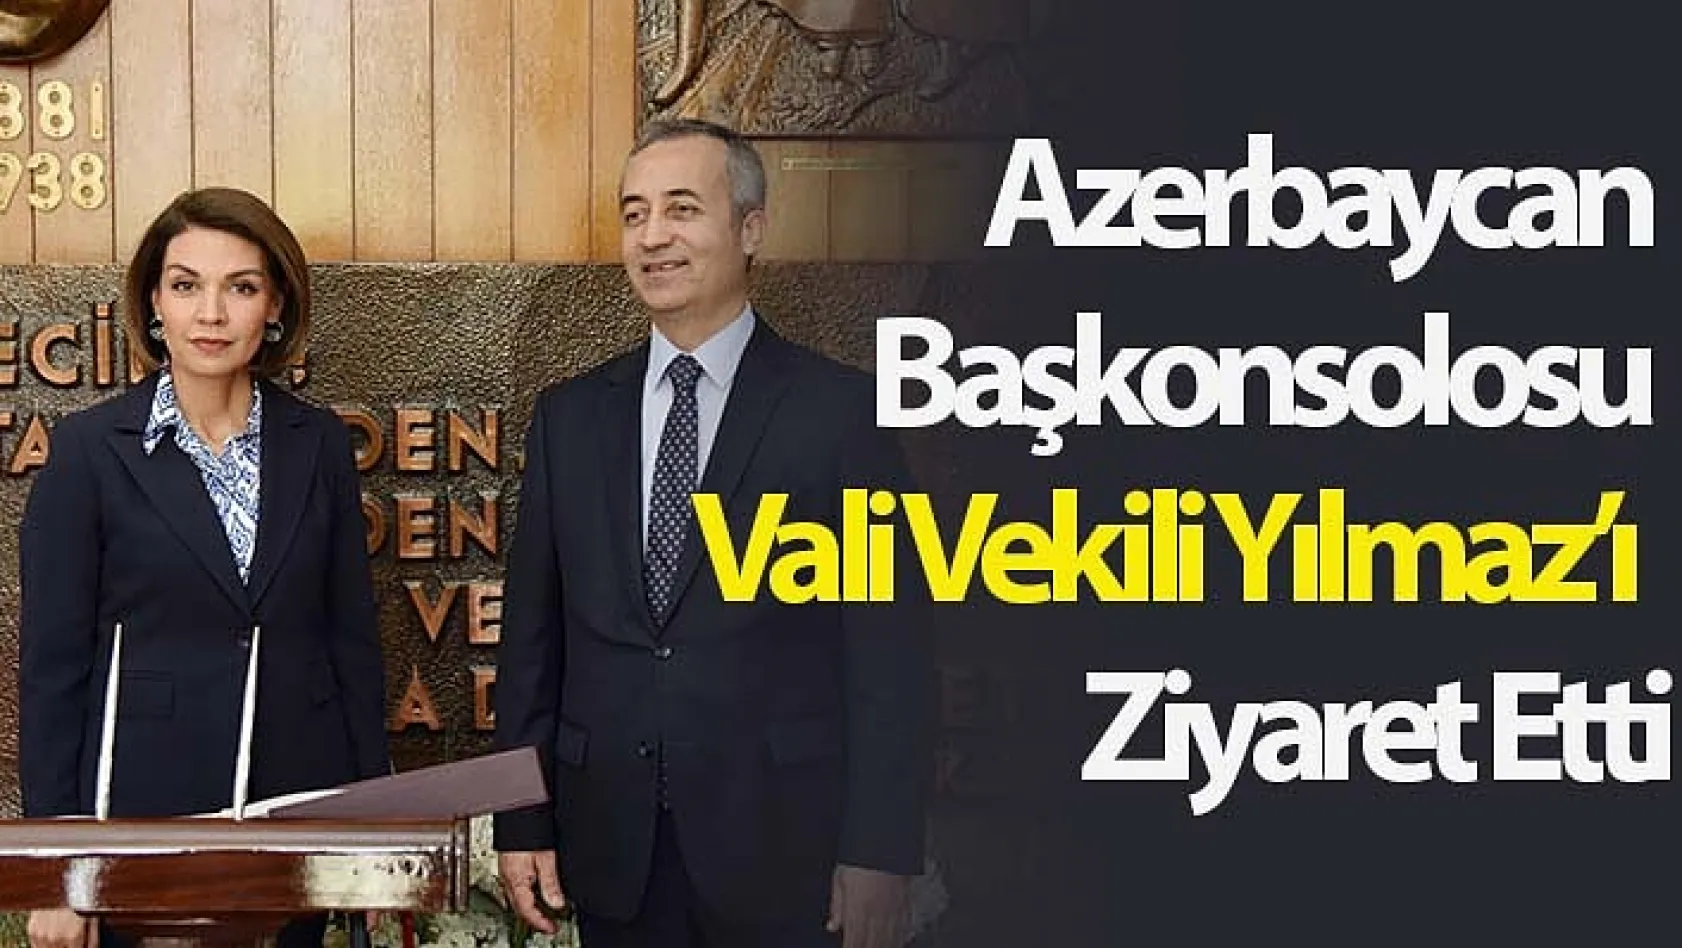 Azerbaycan Başkonsolosu Vali Vekili Yılmaz'ı &nbspZiyaret Etti